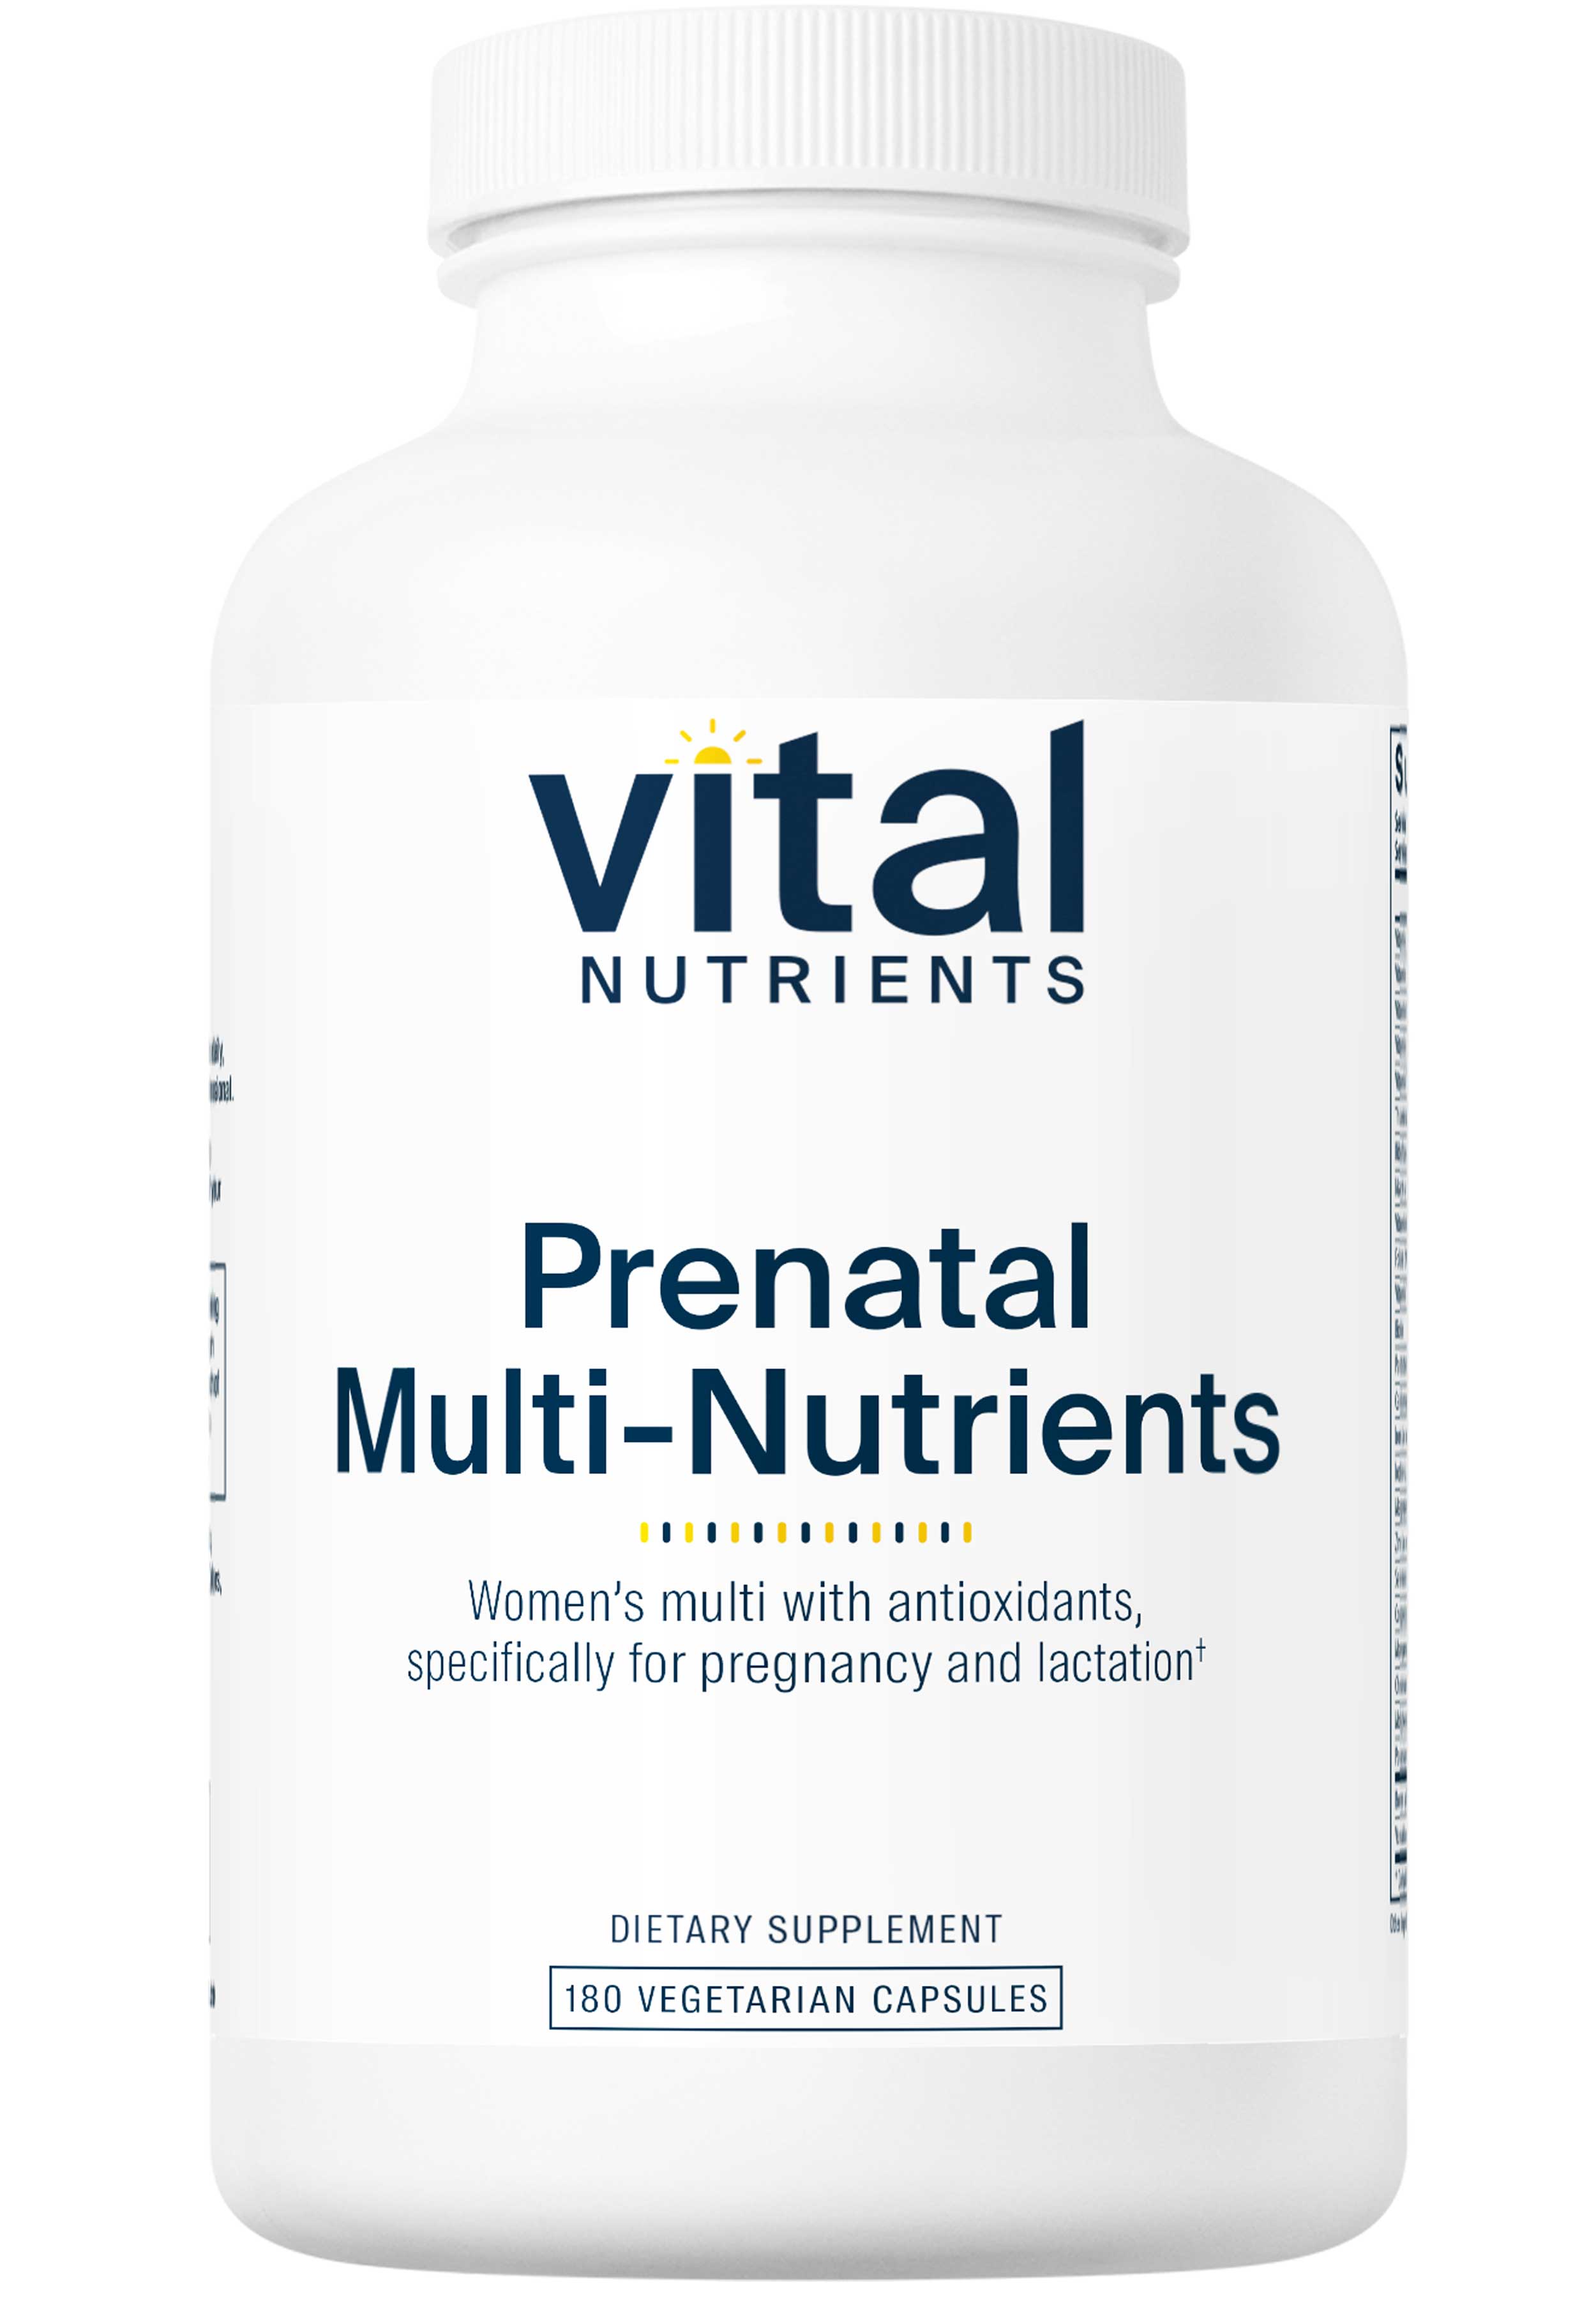 Vital Nutrients PreNatal Multi-Nutrients